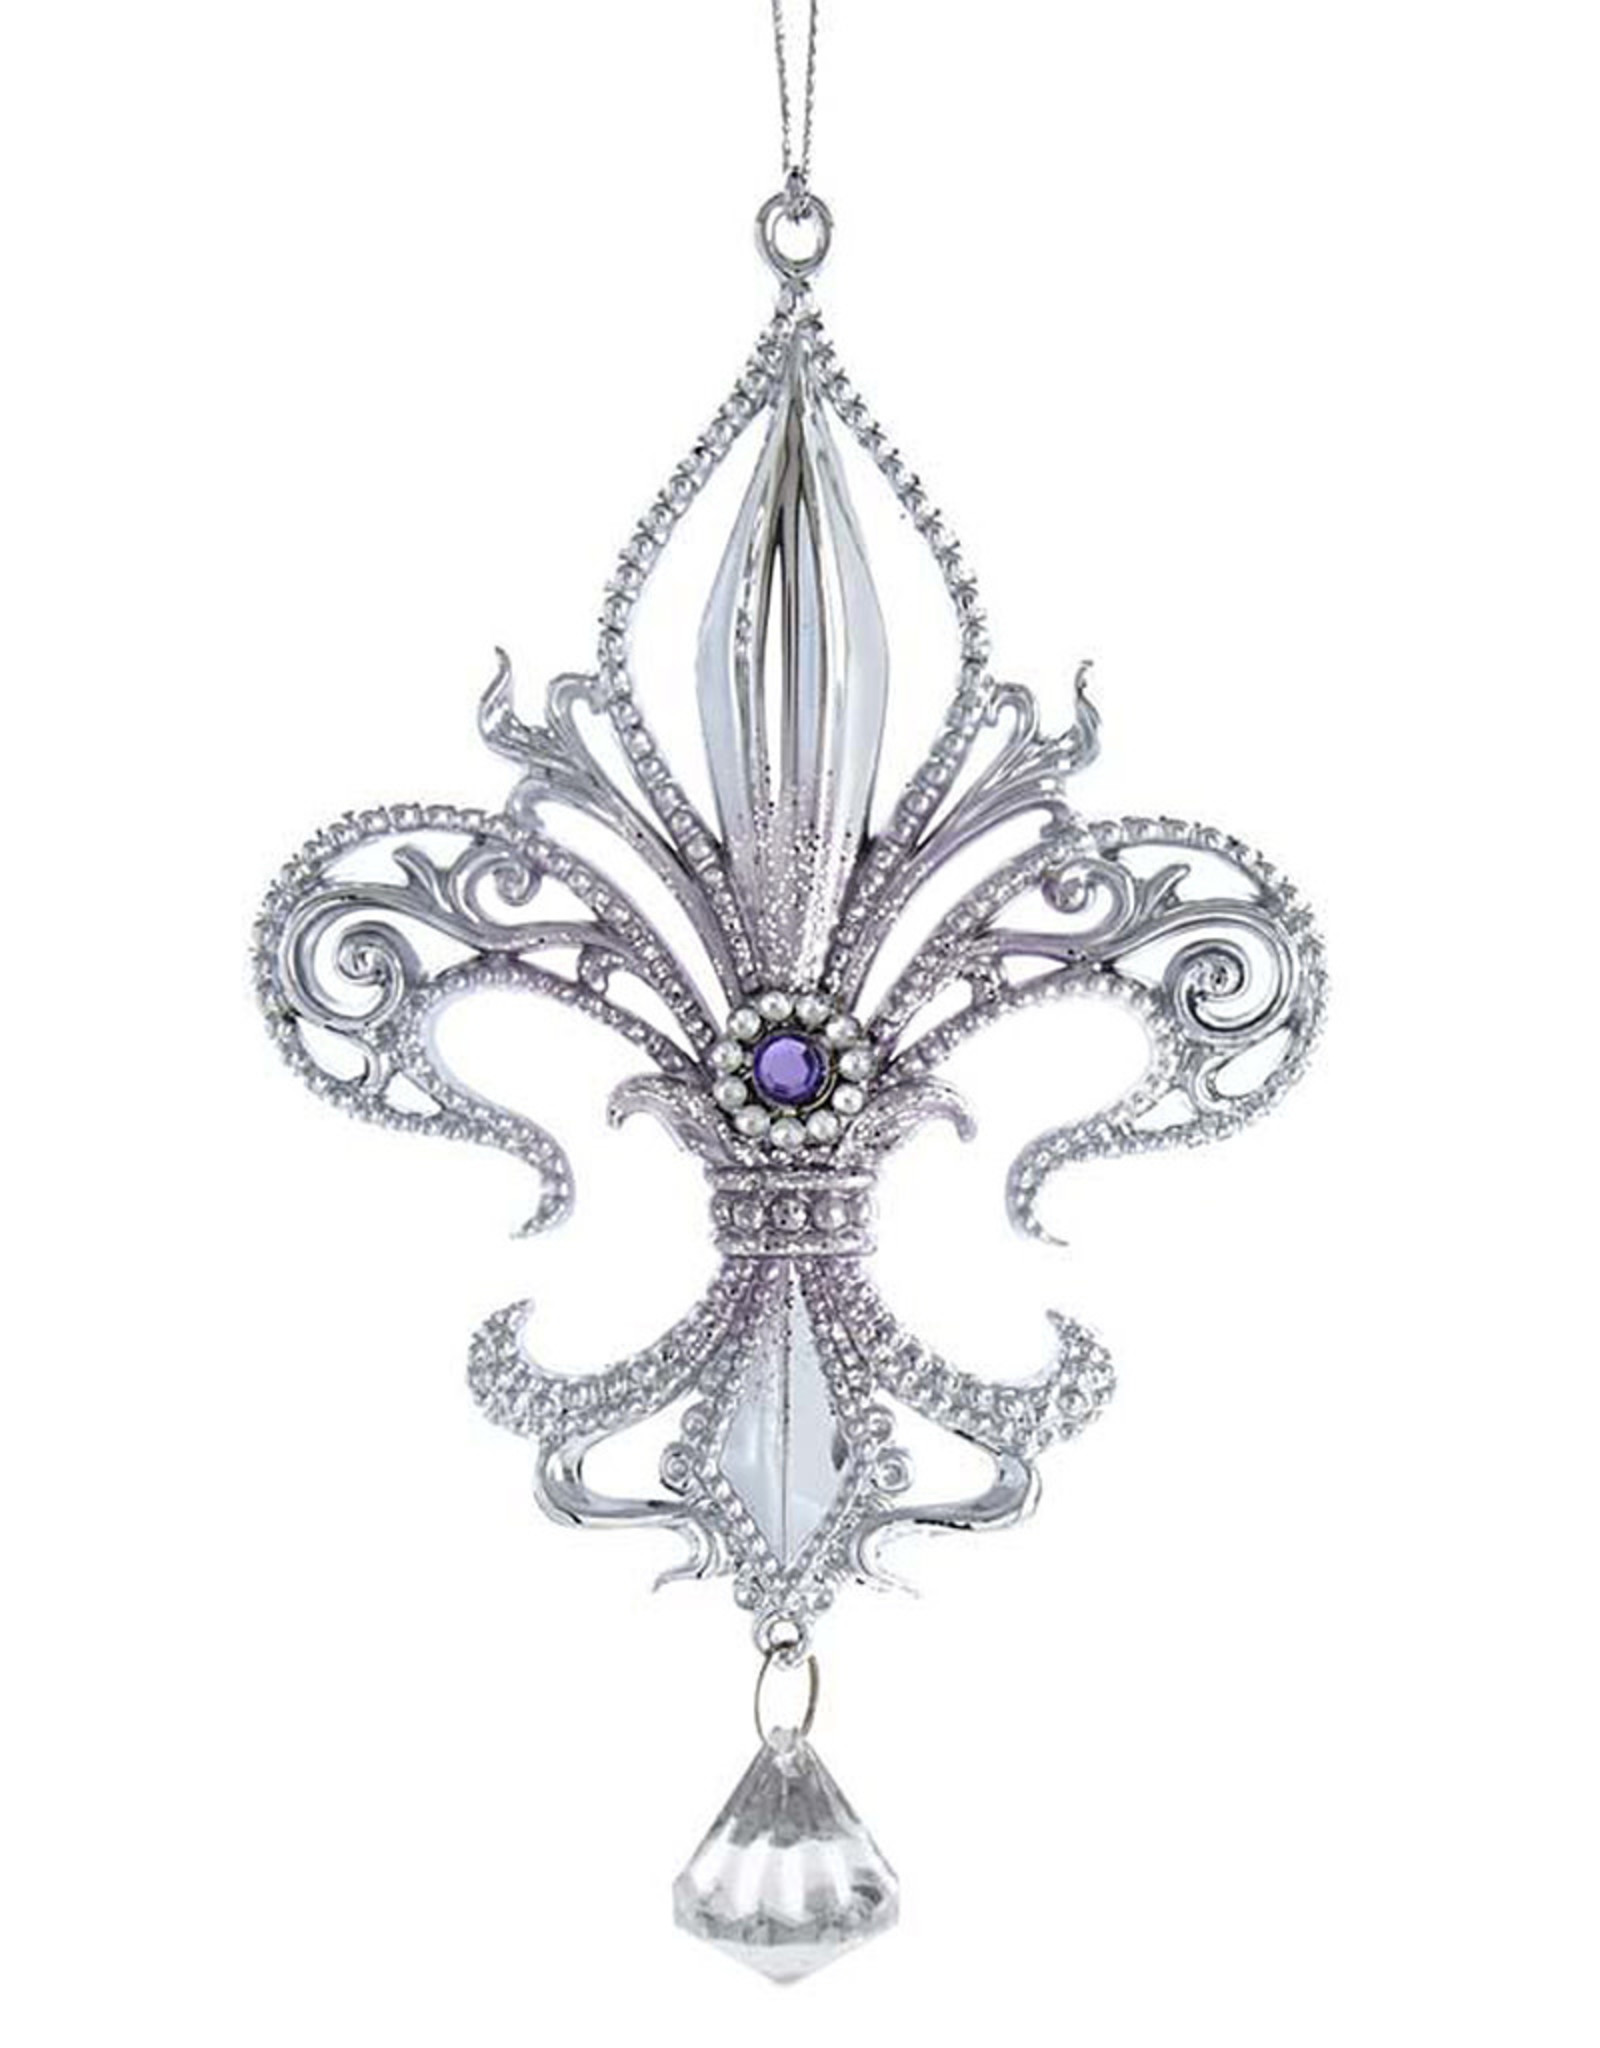 Kurt Adler Royal Splendor Fleur De Lis Ornament Silver